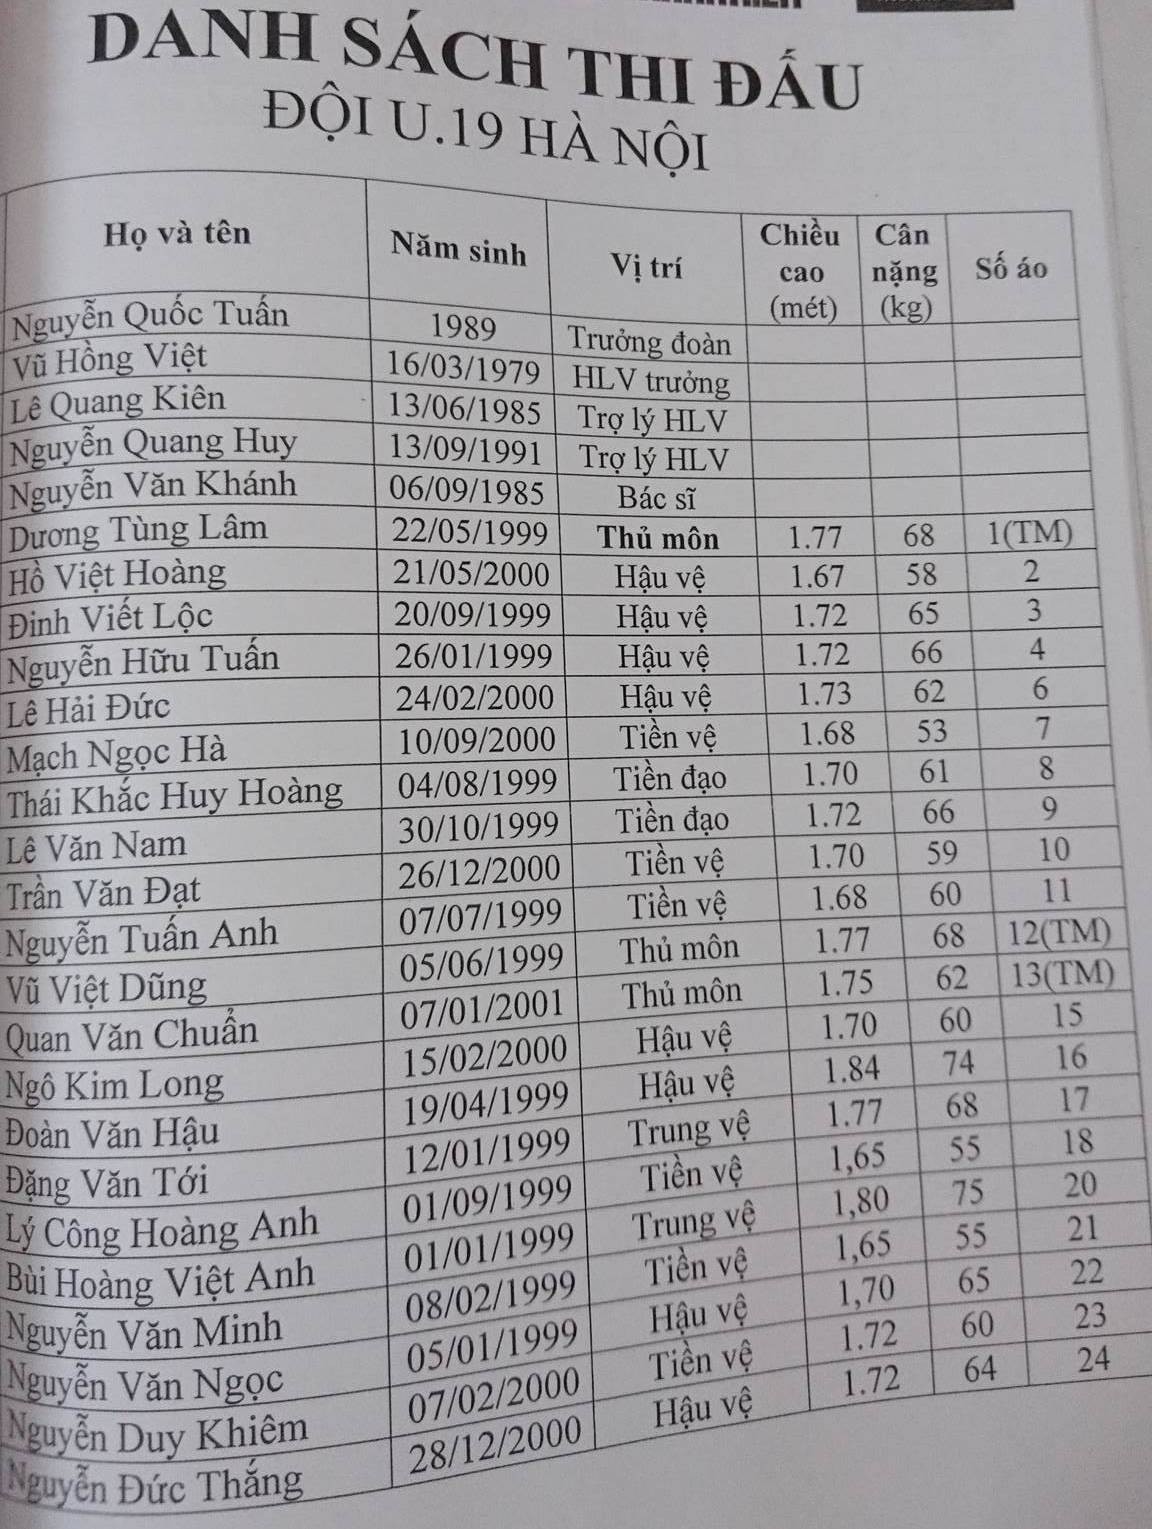 Danh sách U19 CLB Hà Nội có tên Đặng Văn Tới và Đoàn Văn Hậu. Ảnh: V.N.